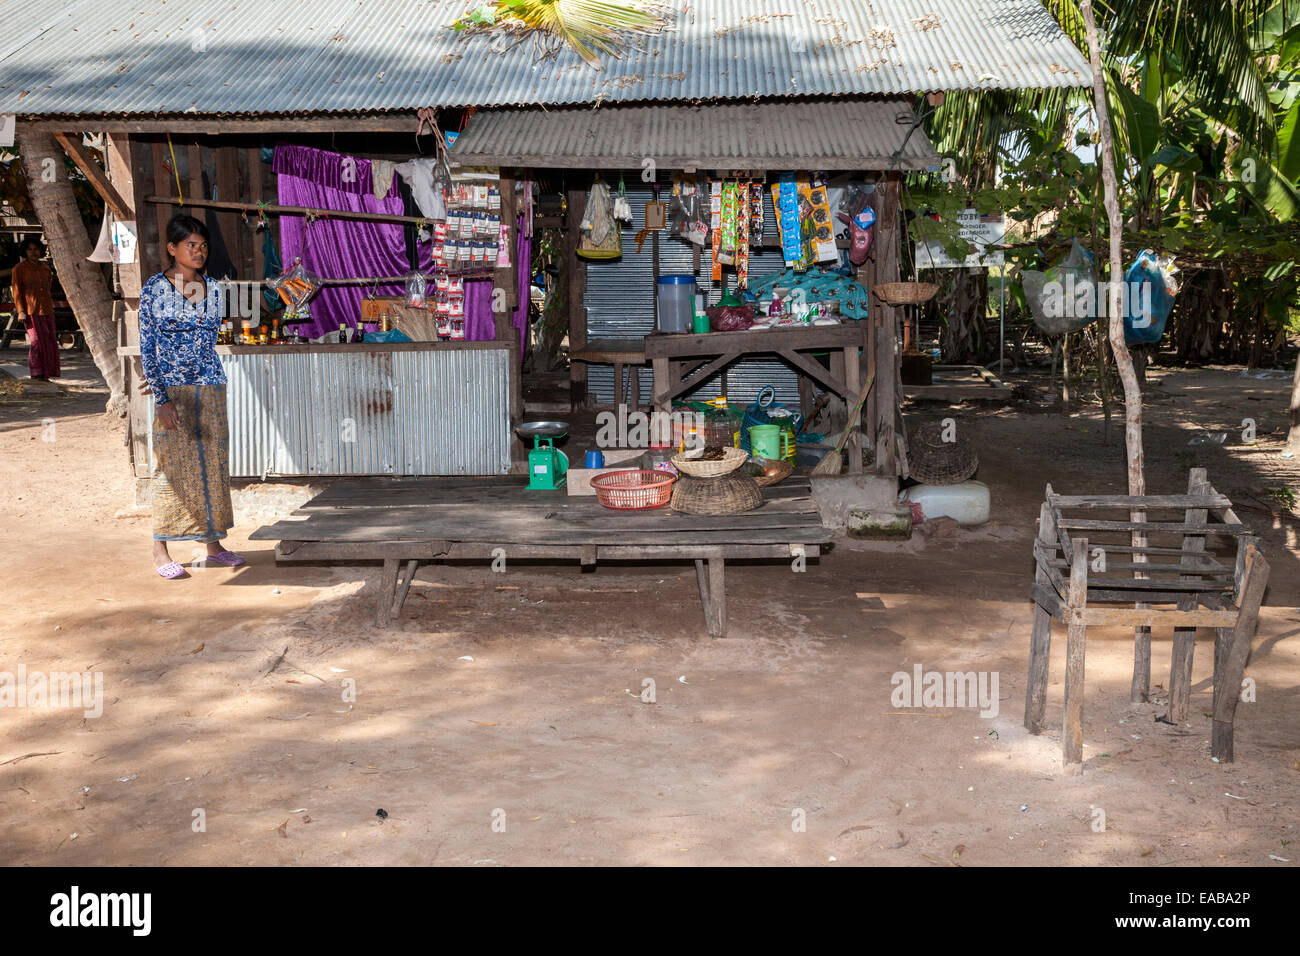 Camboya. Tienda de pueblo rural. Foto de stock